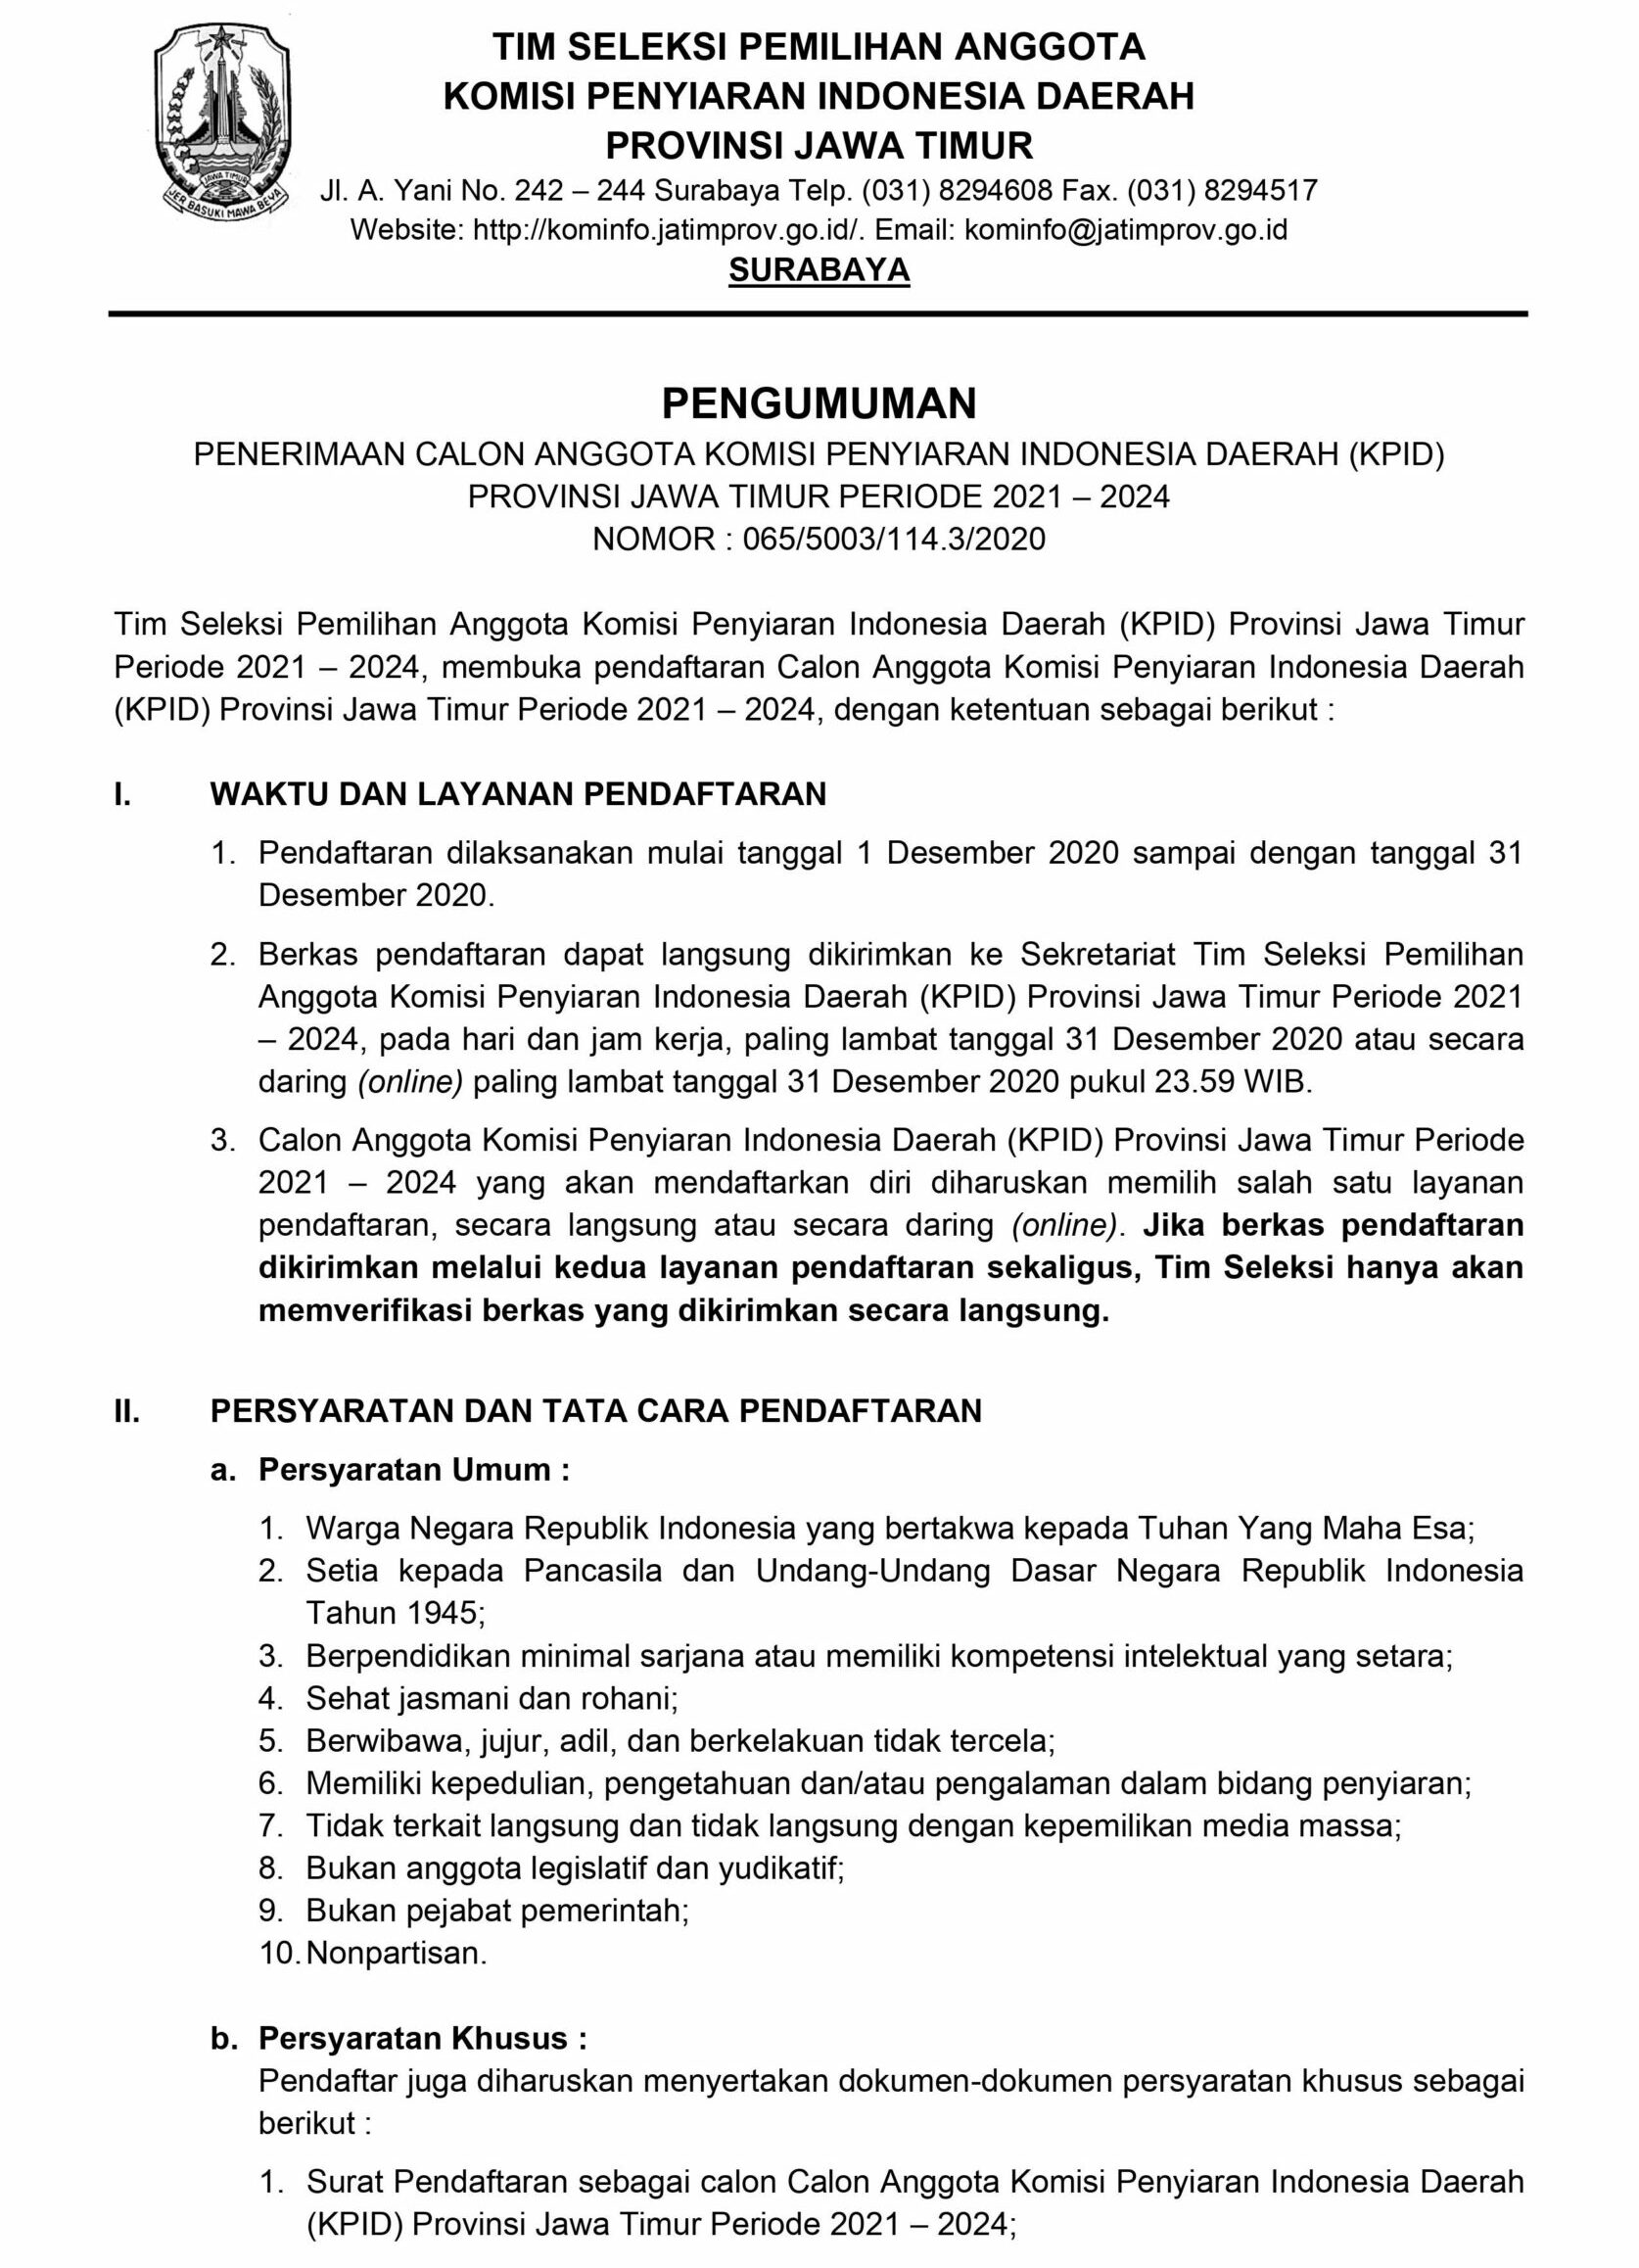 Lowongan Kerja Komisi Penyiaran Indonesia